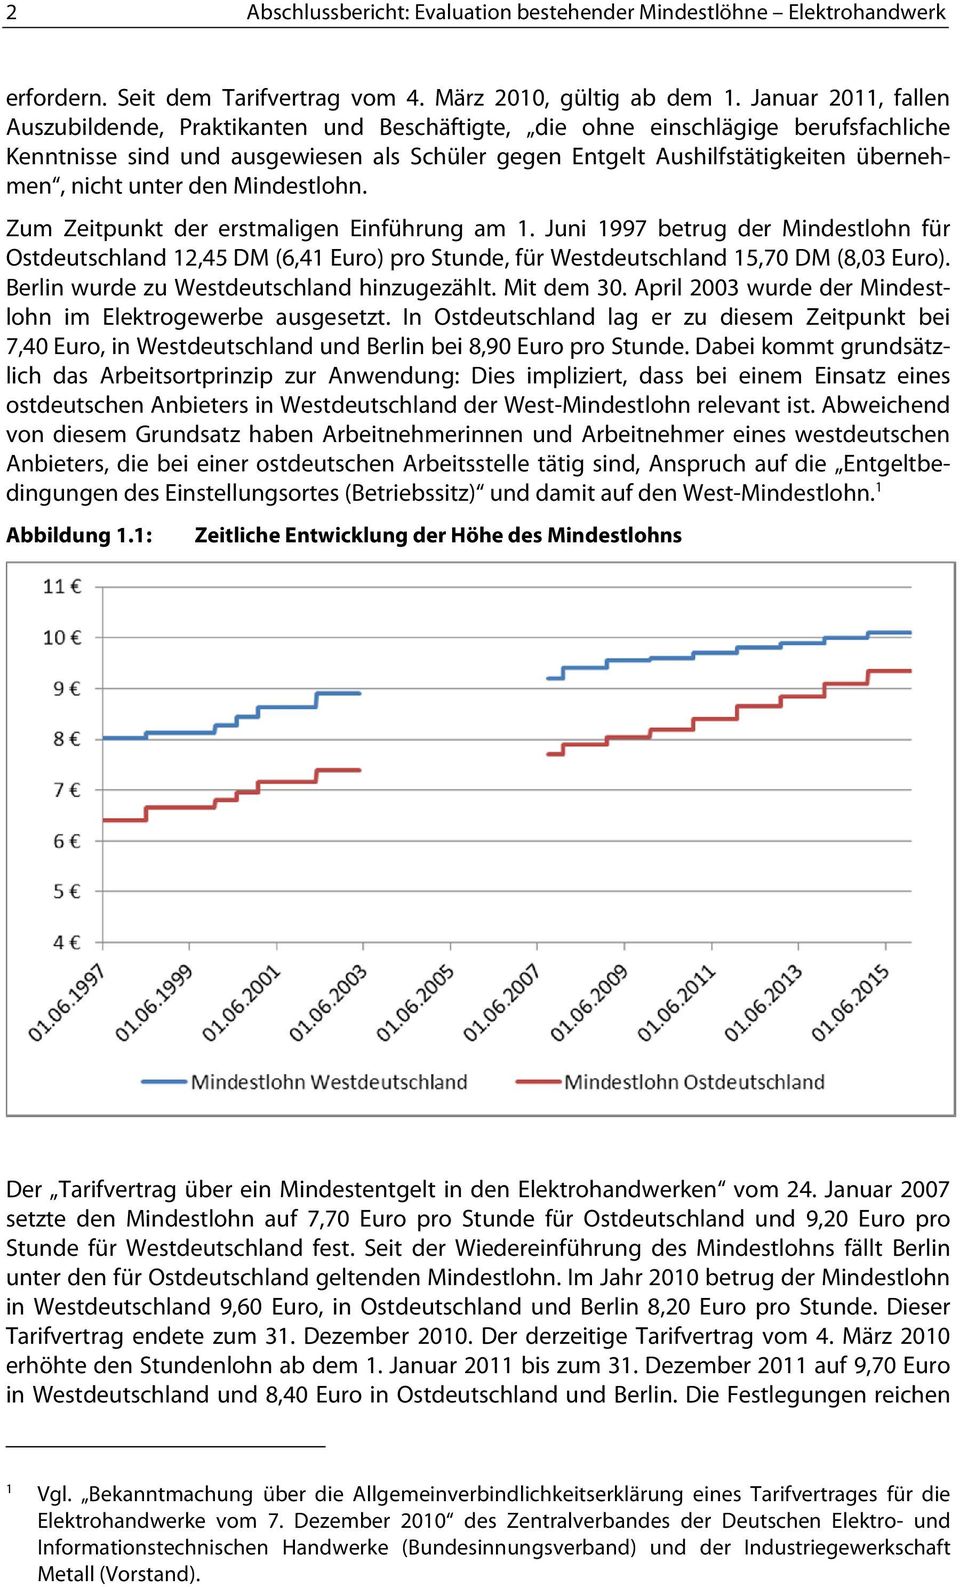 unter den Mindestlohn. Zum Zeitpunkt der erstmaligen Einführung am 1. Juni 1997 betrug der Mindestlohn für Ostdeutschland 12,45 DM (6,41 Euro) pro Stunde, für Westdeutschland 15,70 DM (8,03 Euro).